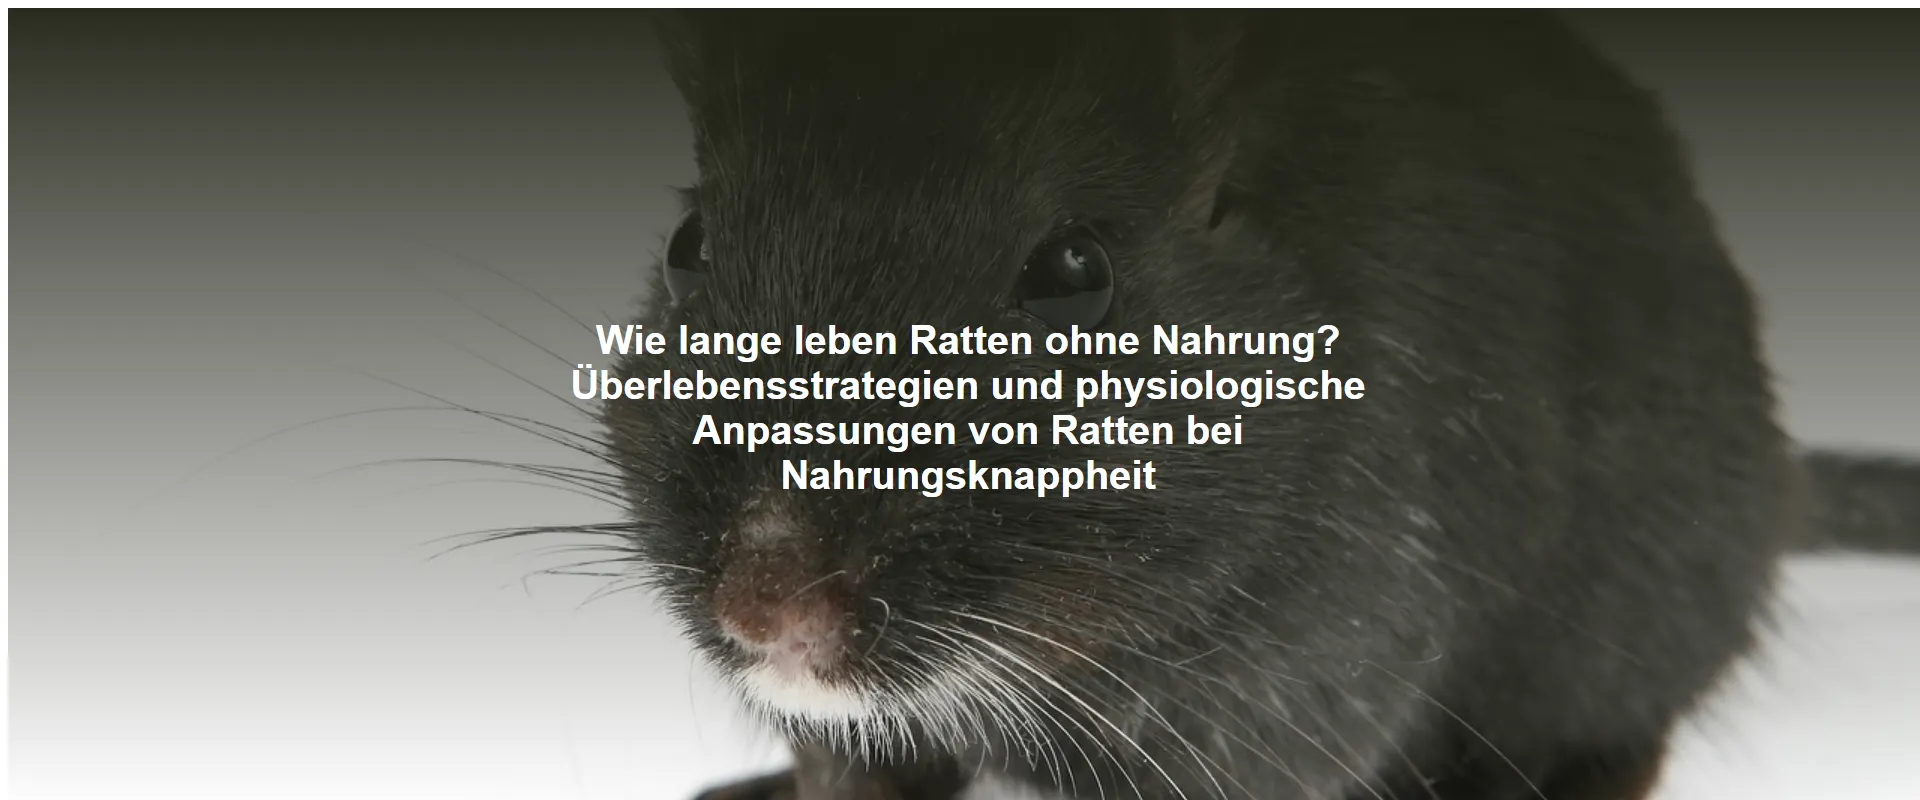 Wie lange leben Ratten ohne Nahrung? Überlebensstrategien und physiologische Anpassungen von Ratten bei Nahrungsknappheit